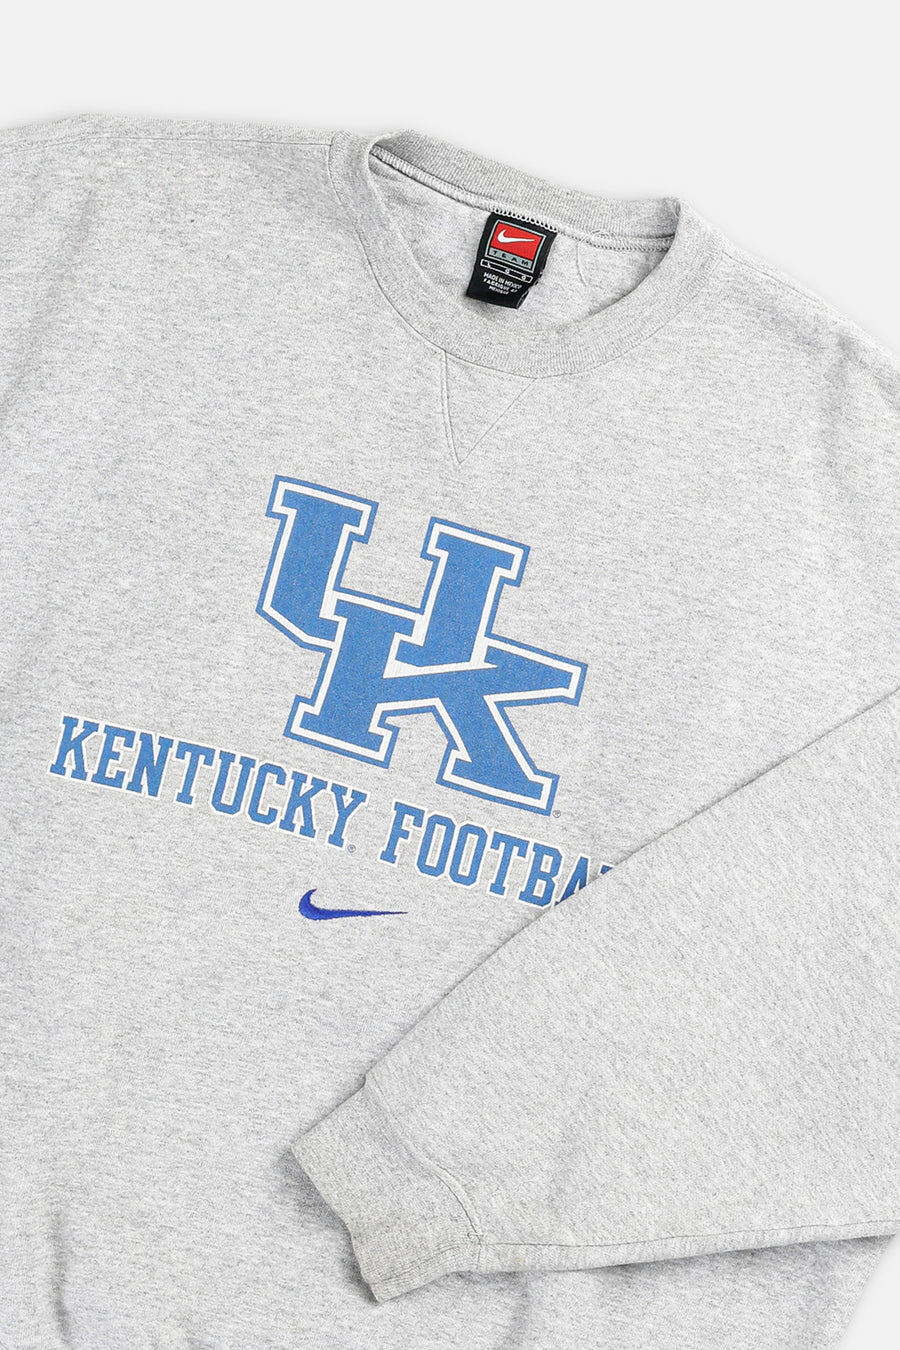 Vintage Kentucky Football Nike Team Sweatshirt - L